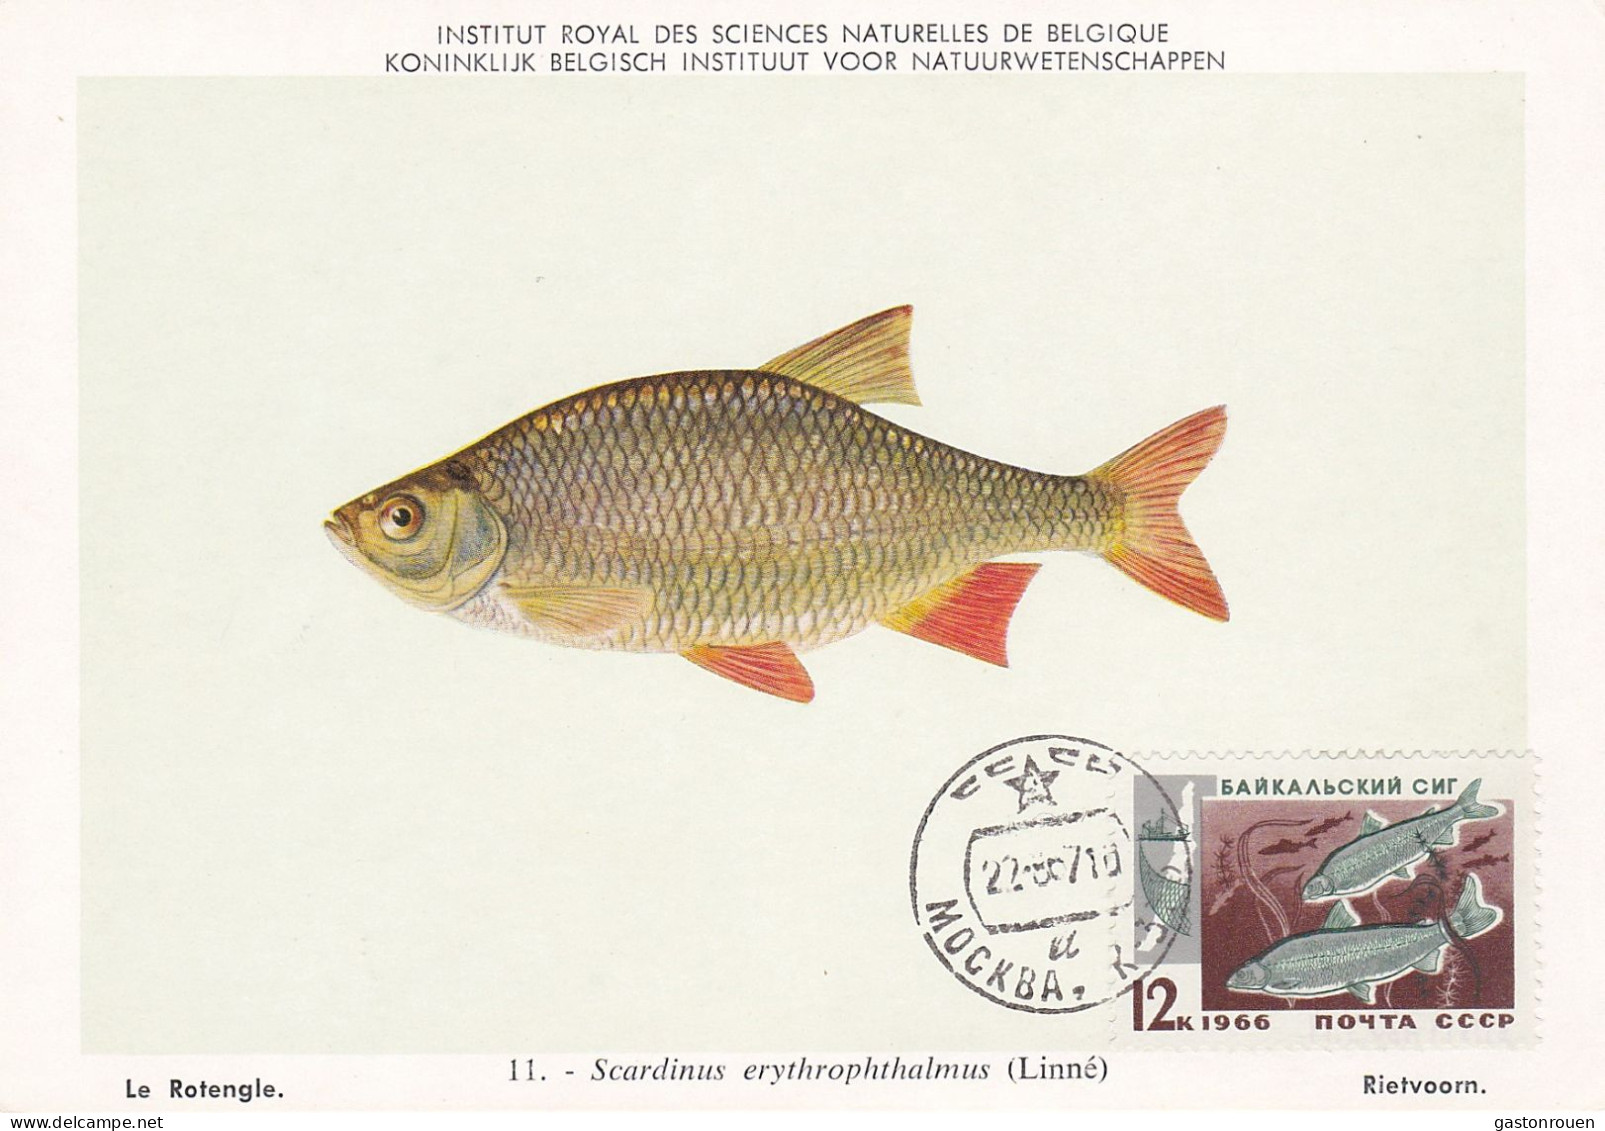 Carte Maximum URSS Russie Russia Poisson Fish 6610 - Tarjetas Máxima